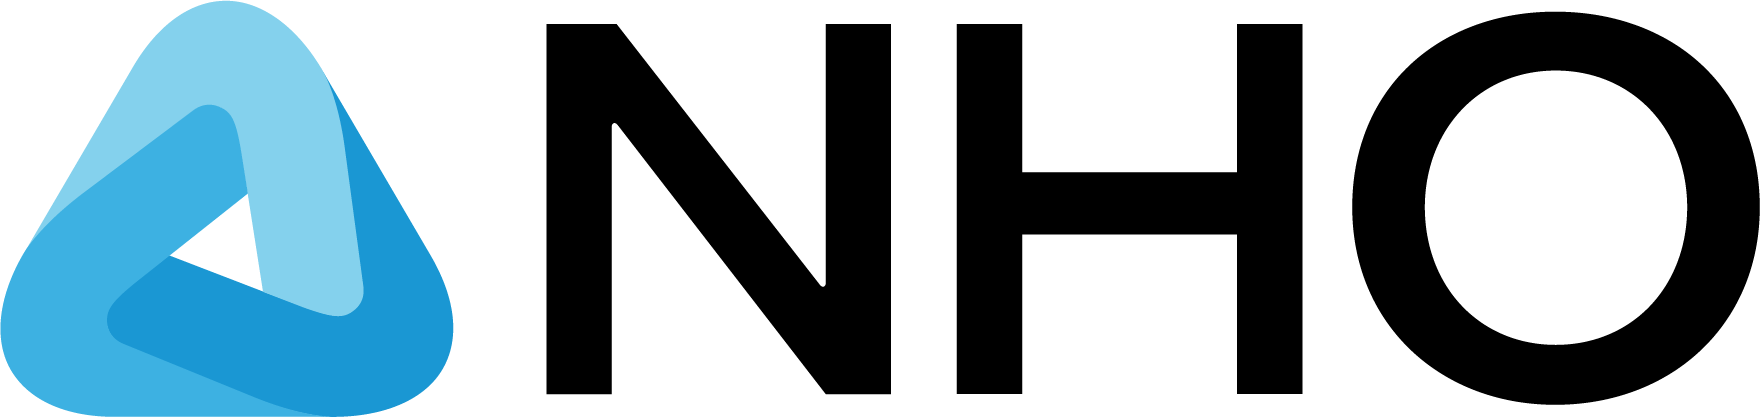 NHO-logo